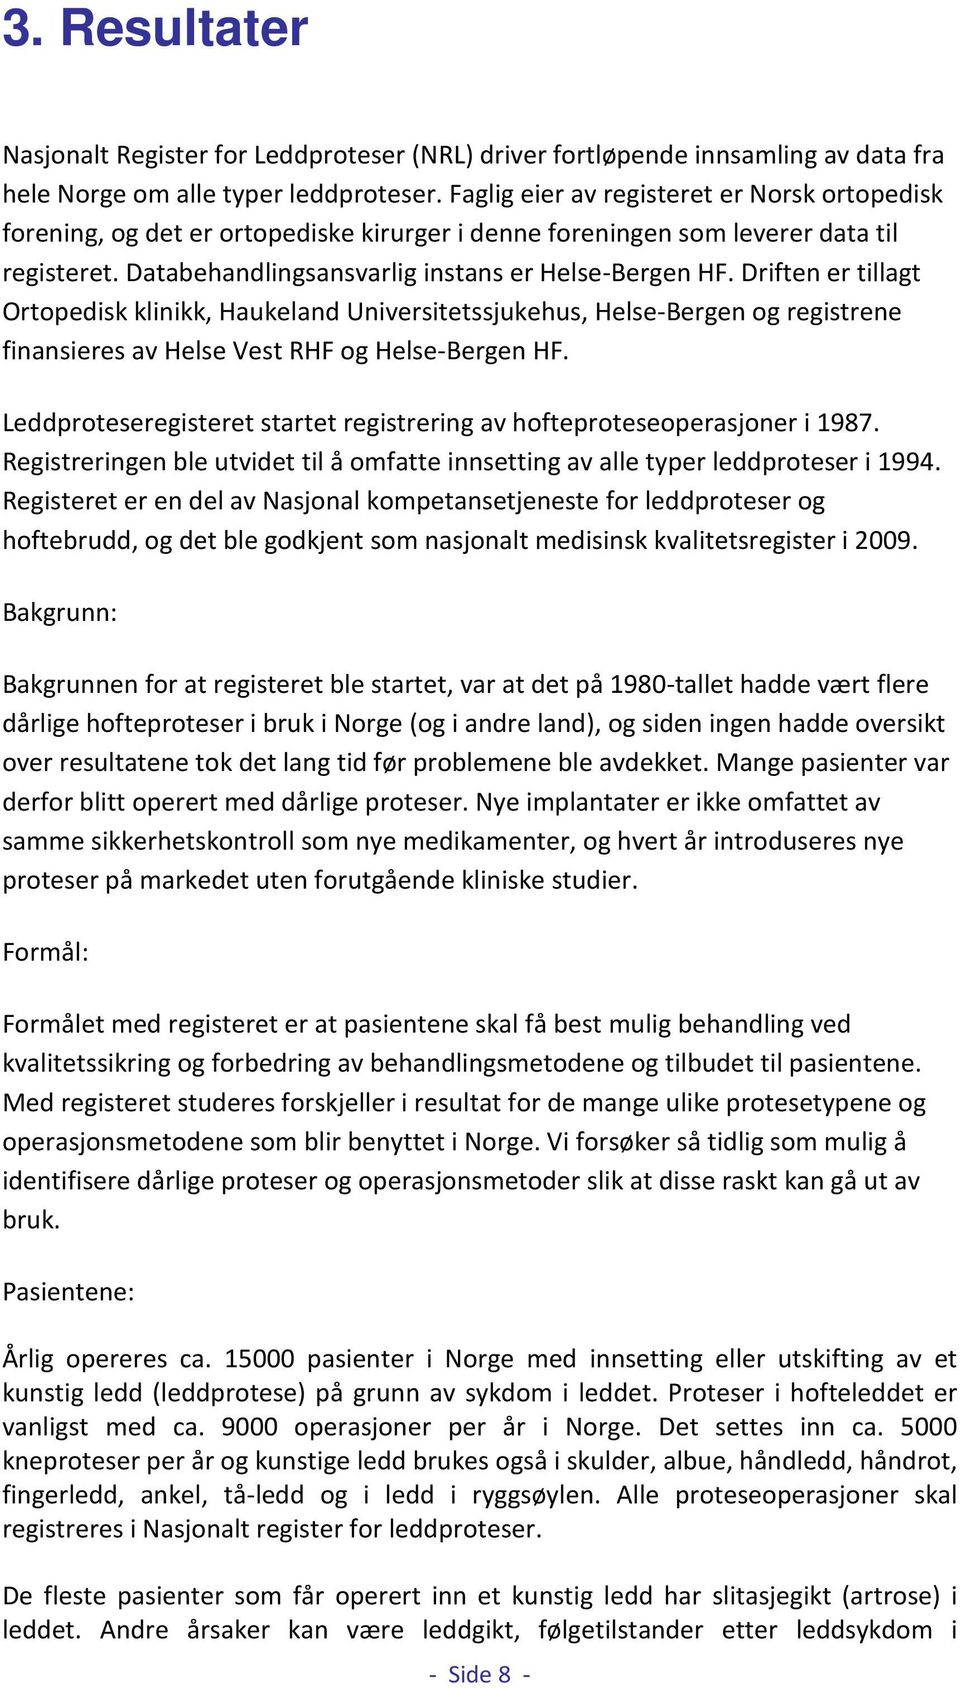 Driften er tillagt Ortopedisk klinikk, Haukeland Universitetssjukehus, Helse-Bergen og registrene finansieres av Helse Vest RHF og Helse-Bergen HF.